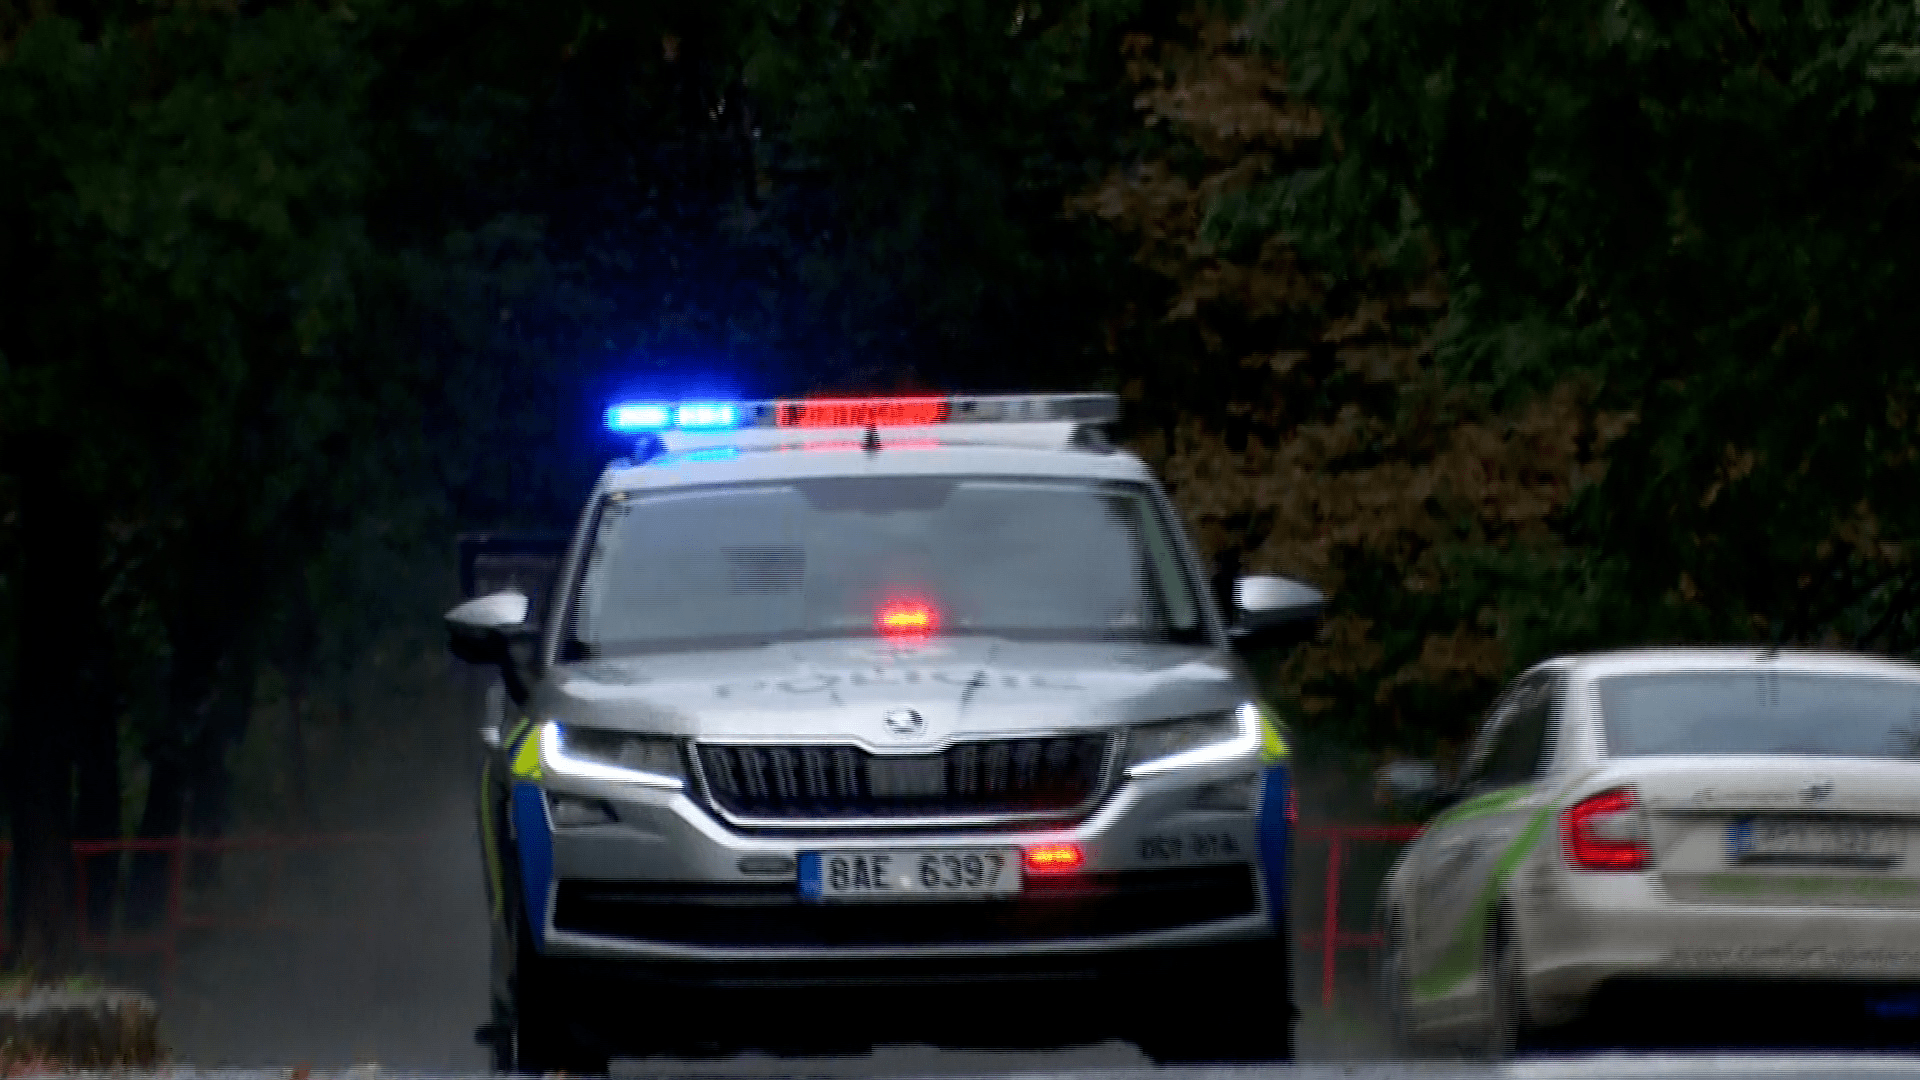 Policejní auto, ilustrační foto